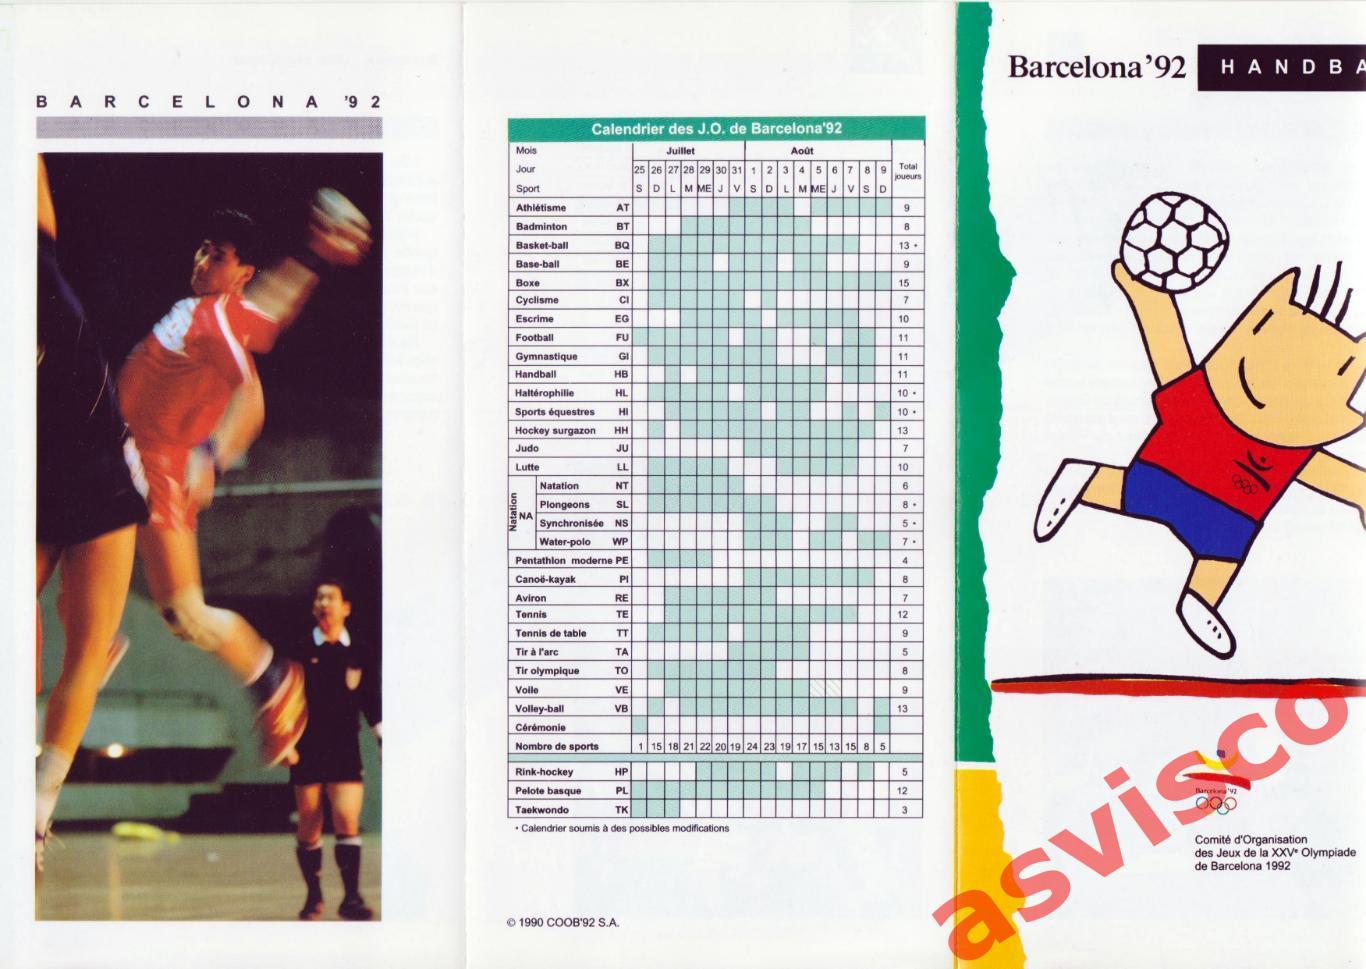 Гандбол. XXV Летние Олимпийские игры 1992 года в Барселоне / Испания. 2